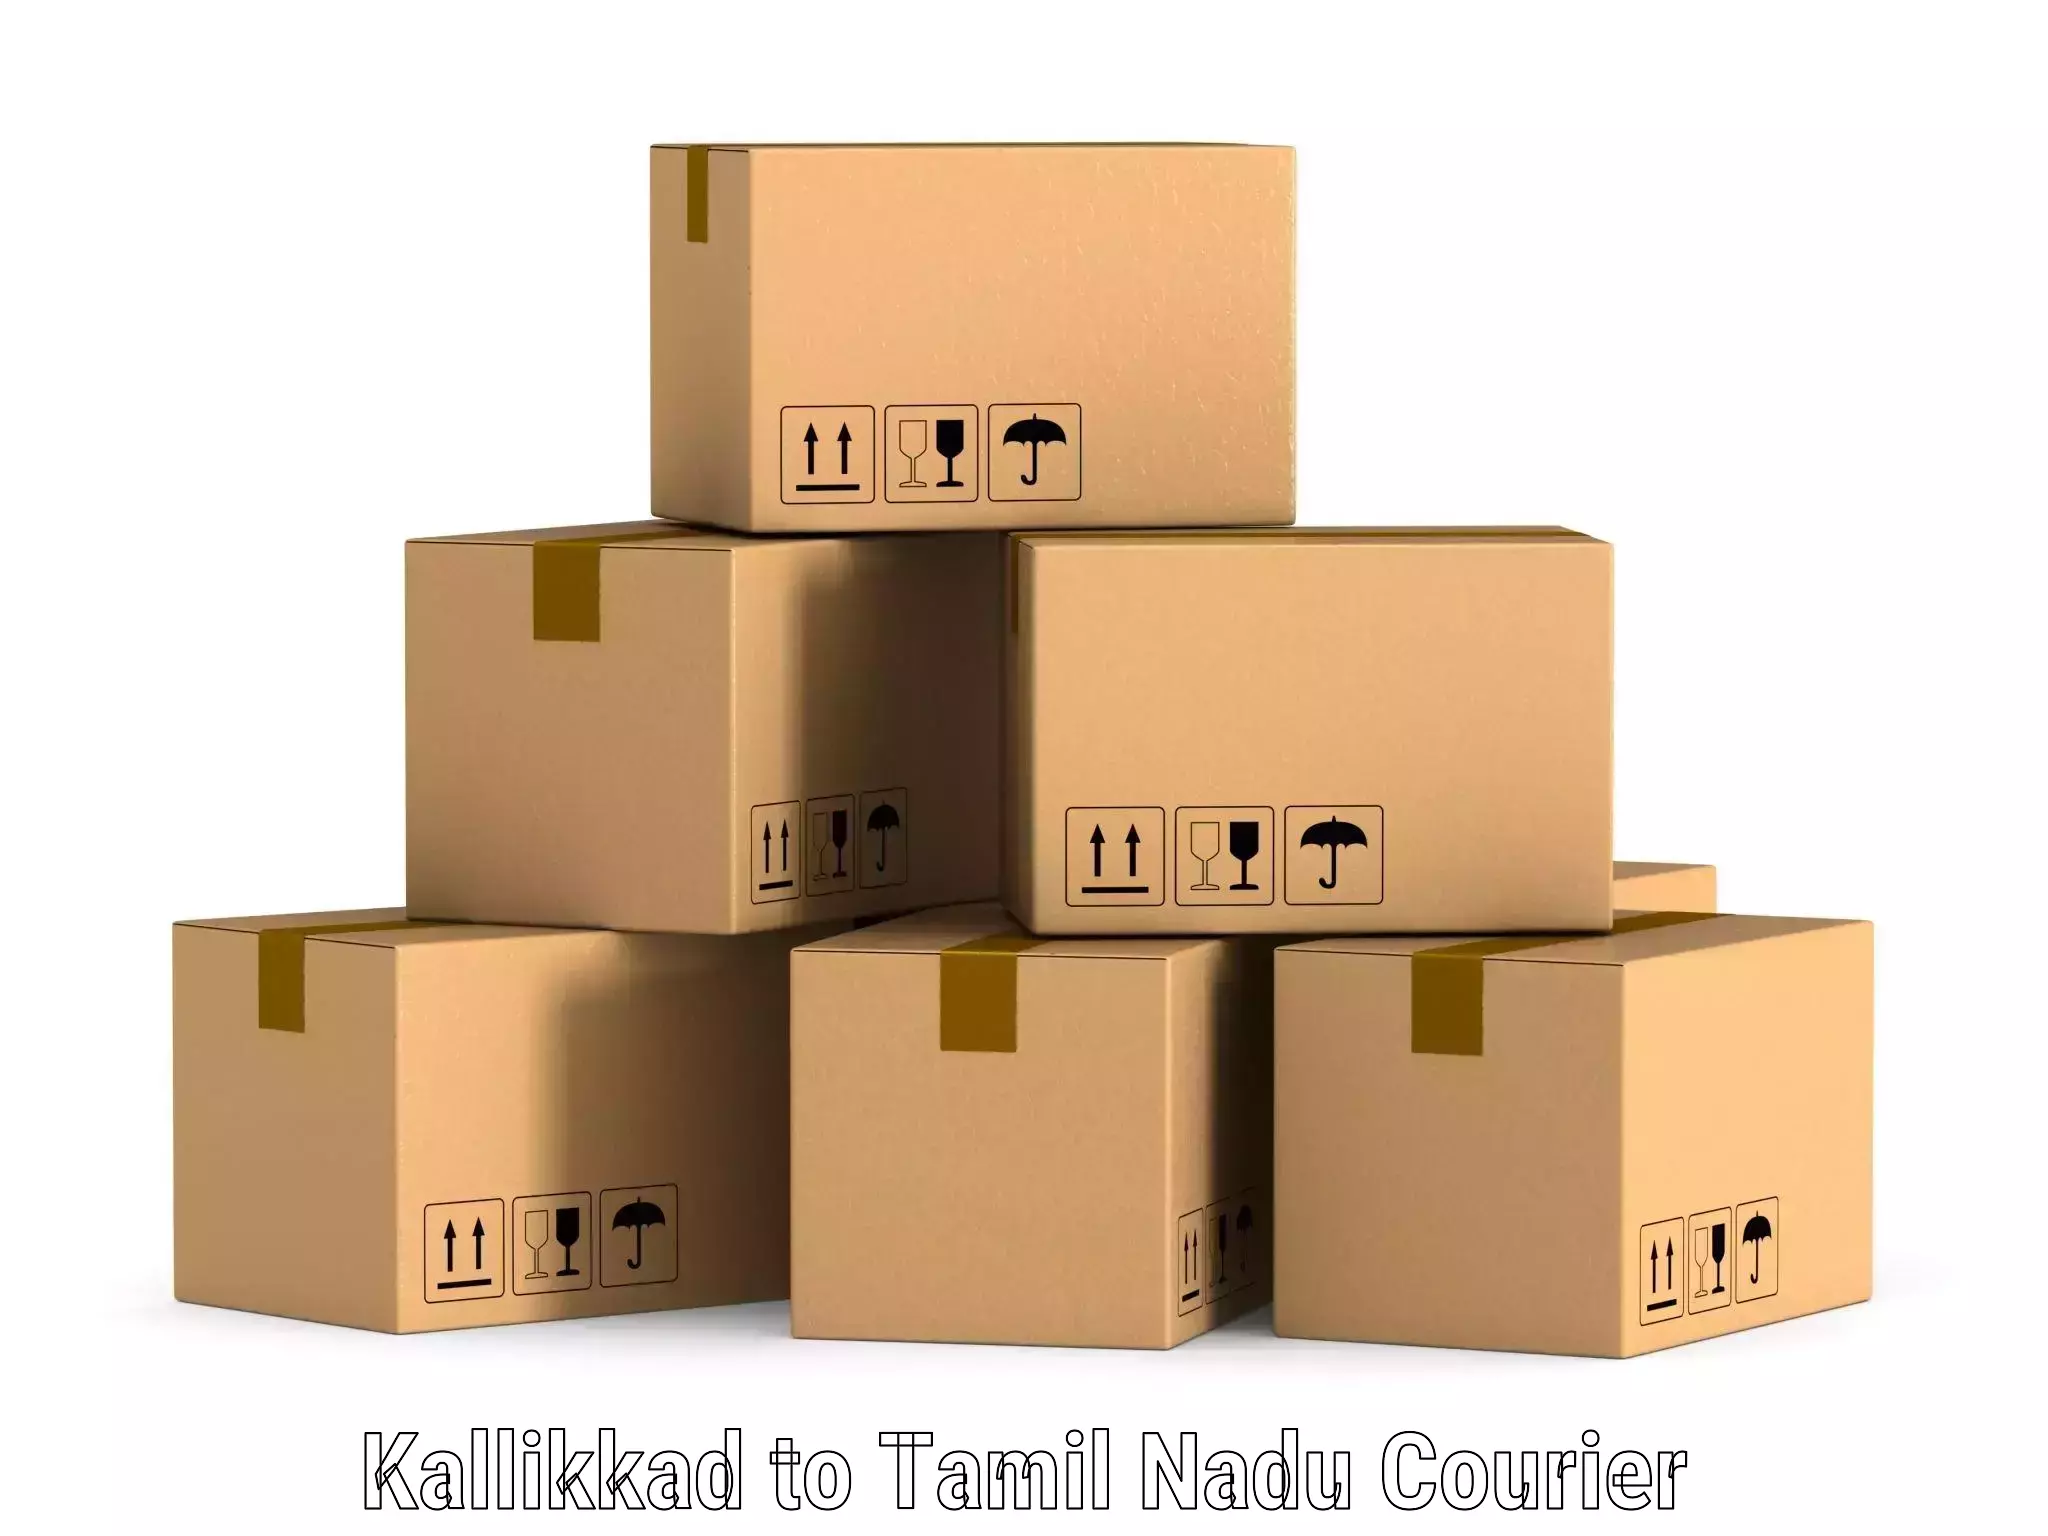 Customer-oriented courier services Kallikkad to Tiruchirappalli